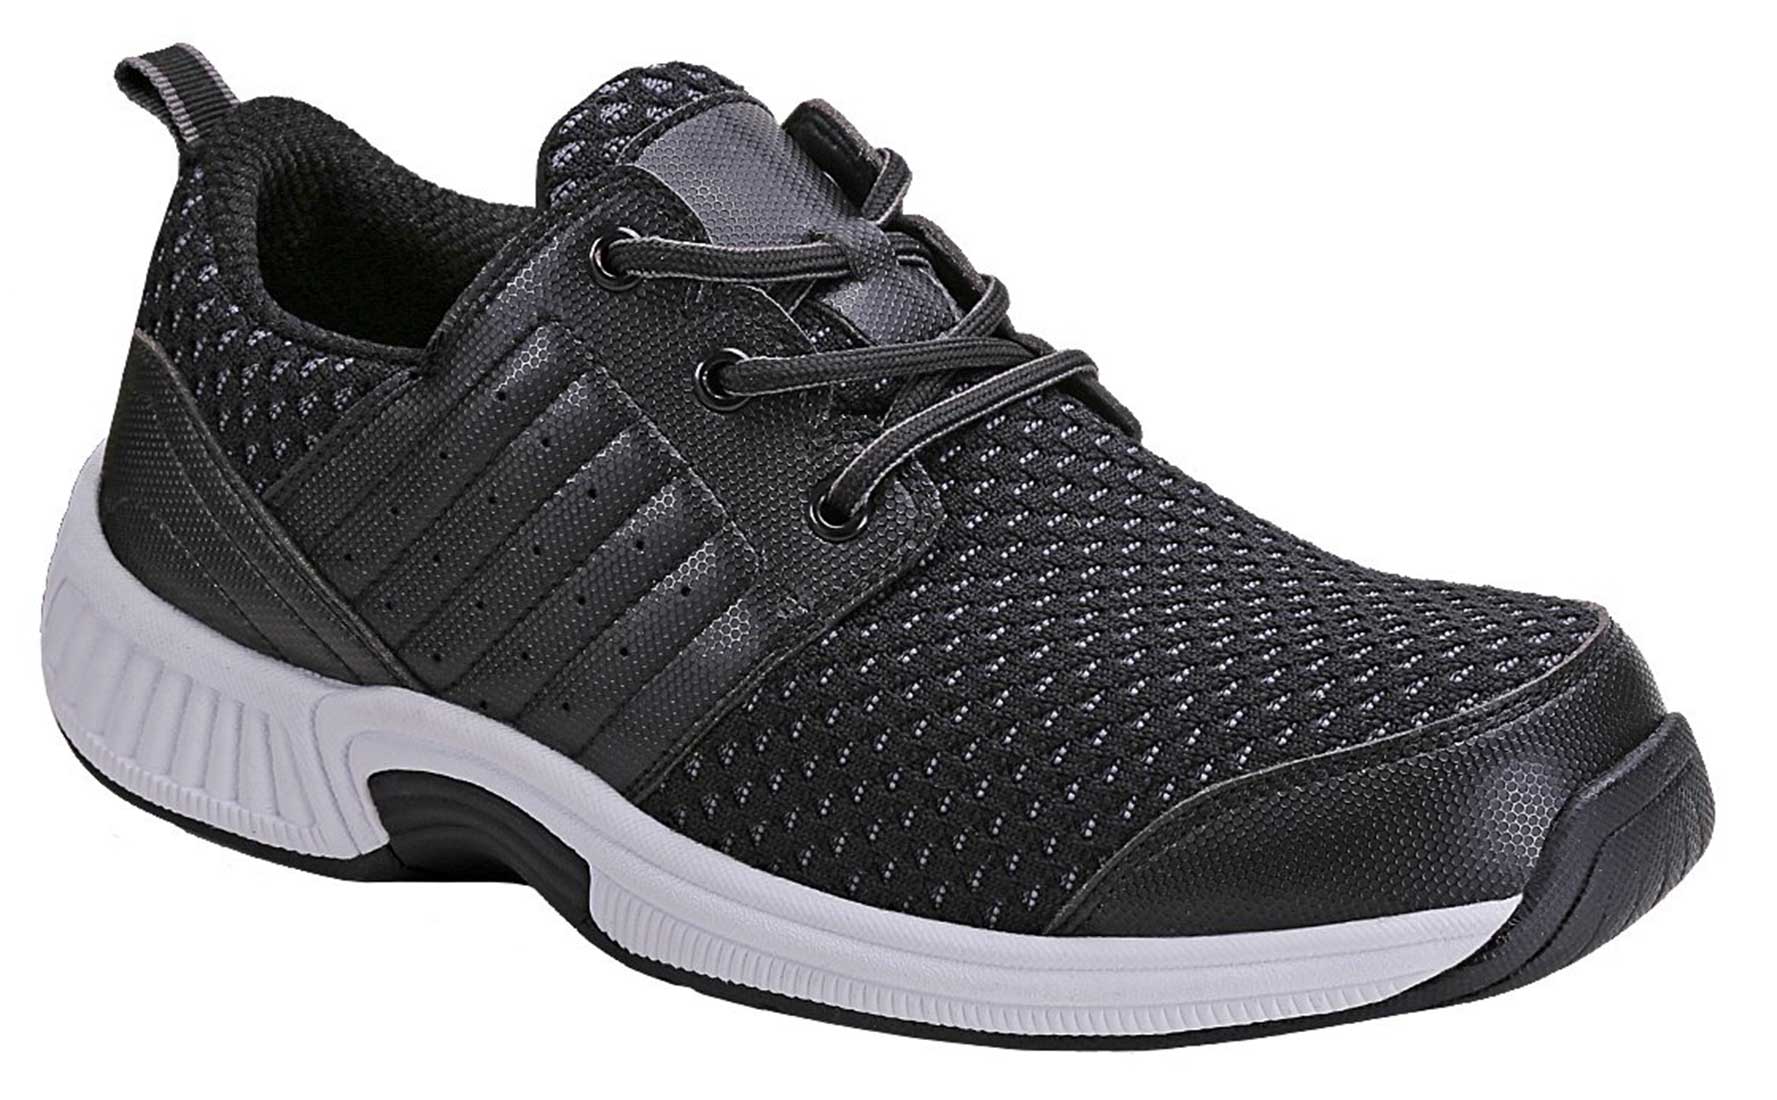 Men's Athletic Shoes Orthopedic Sneakers Diabetic